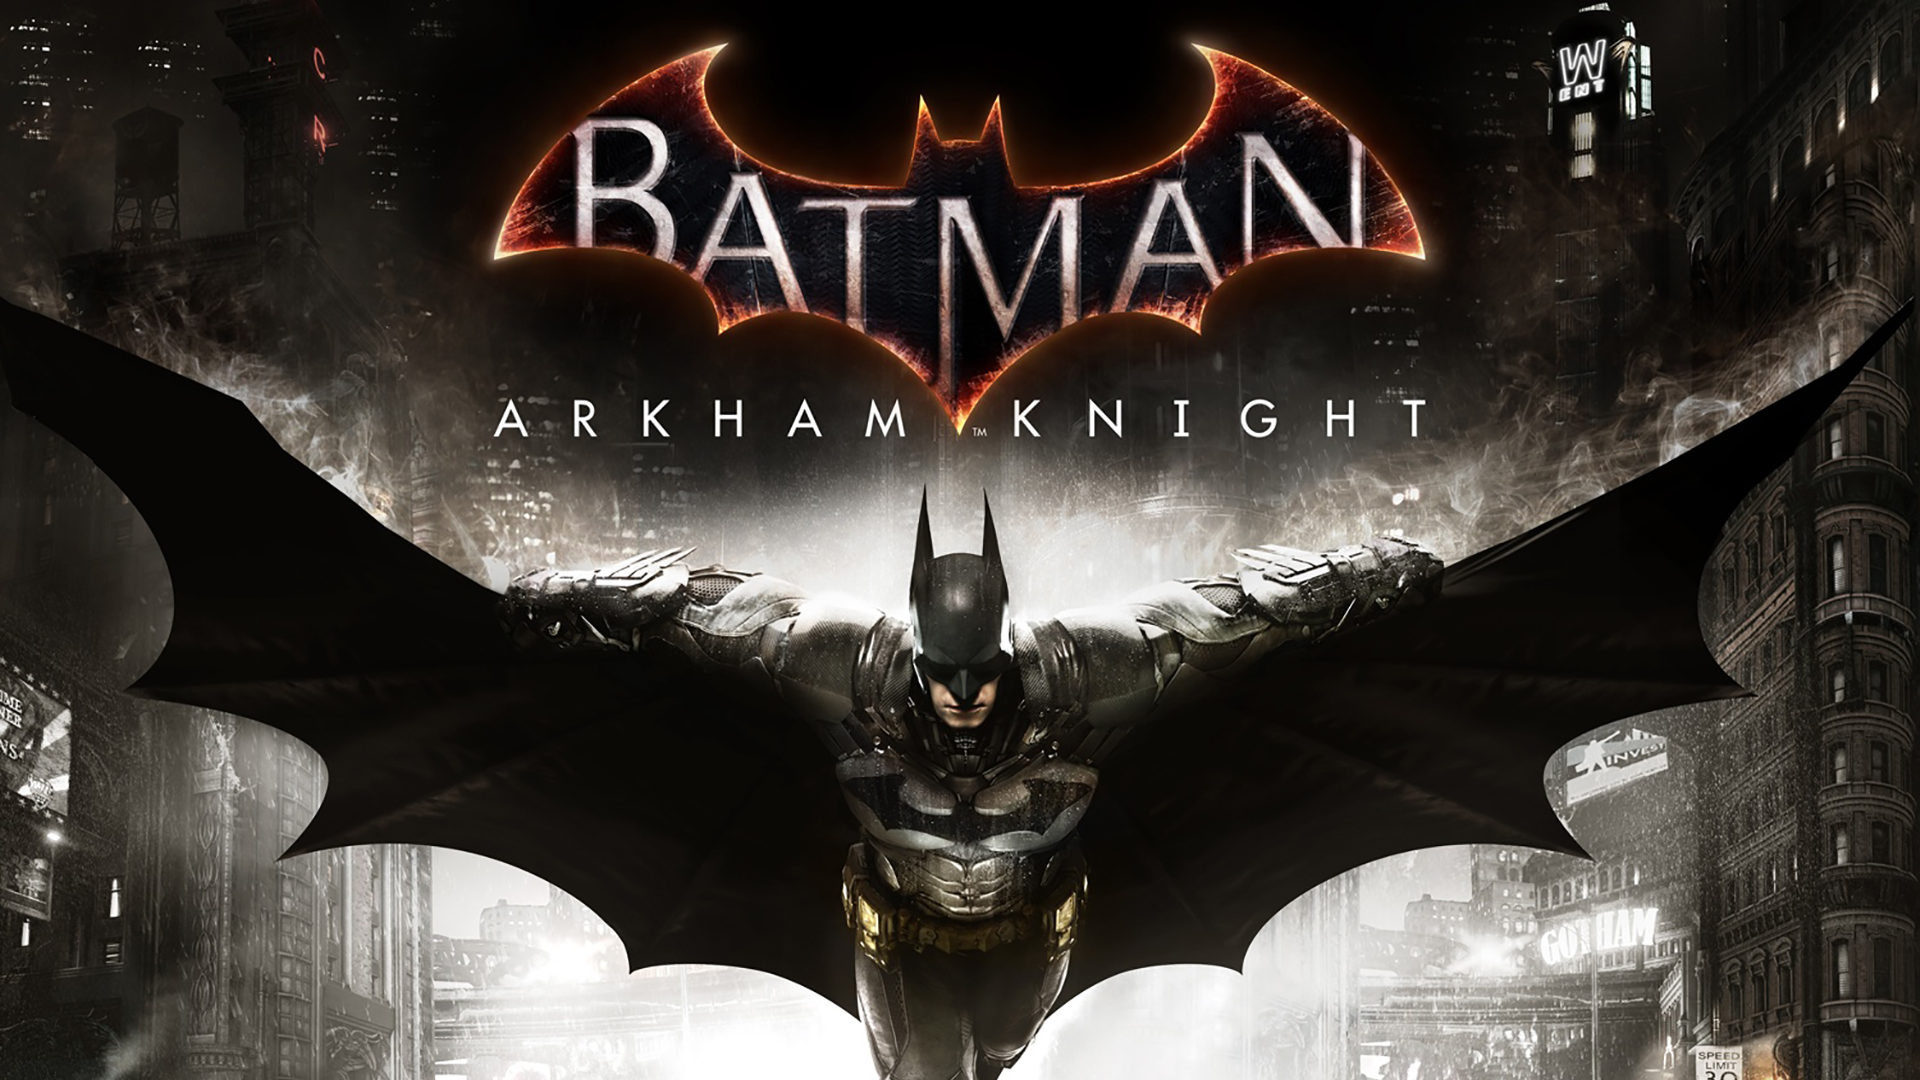 Wallpaper Batman Arkham Knight Jeux Jvl